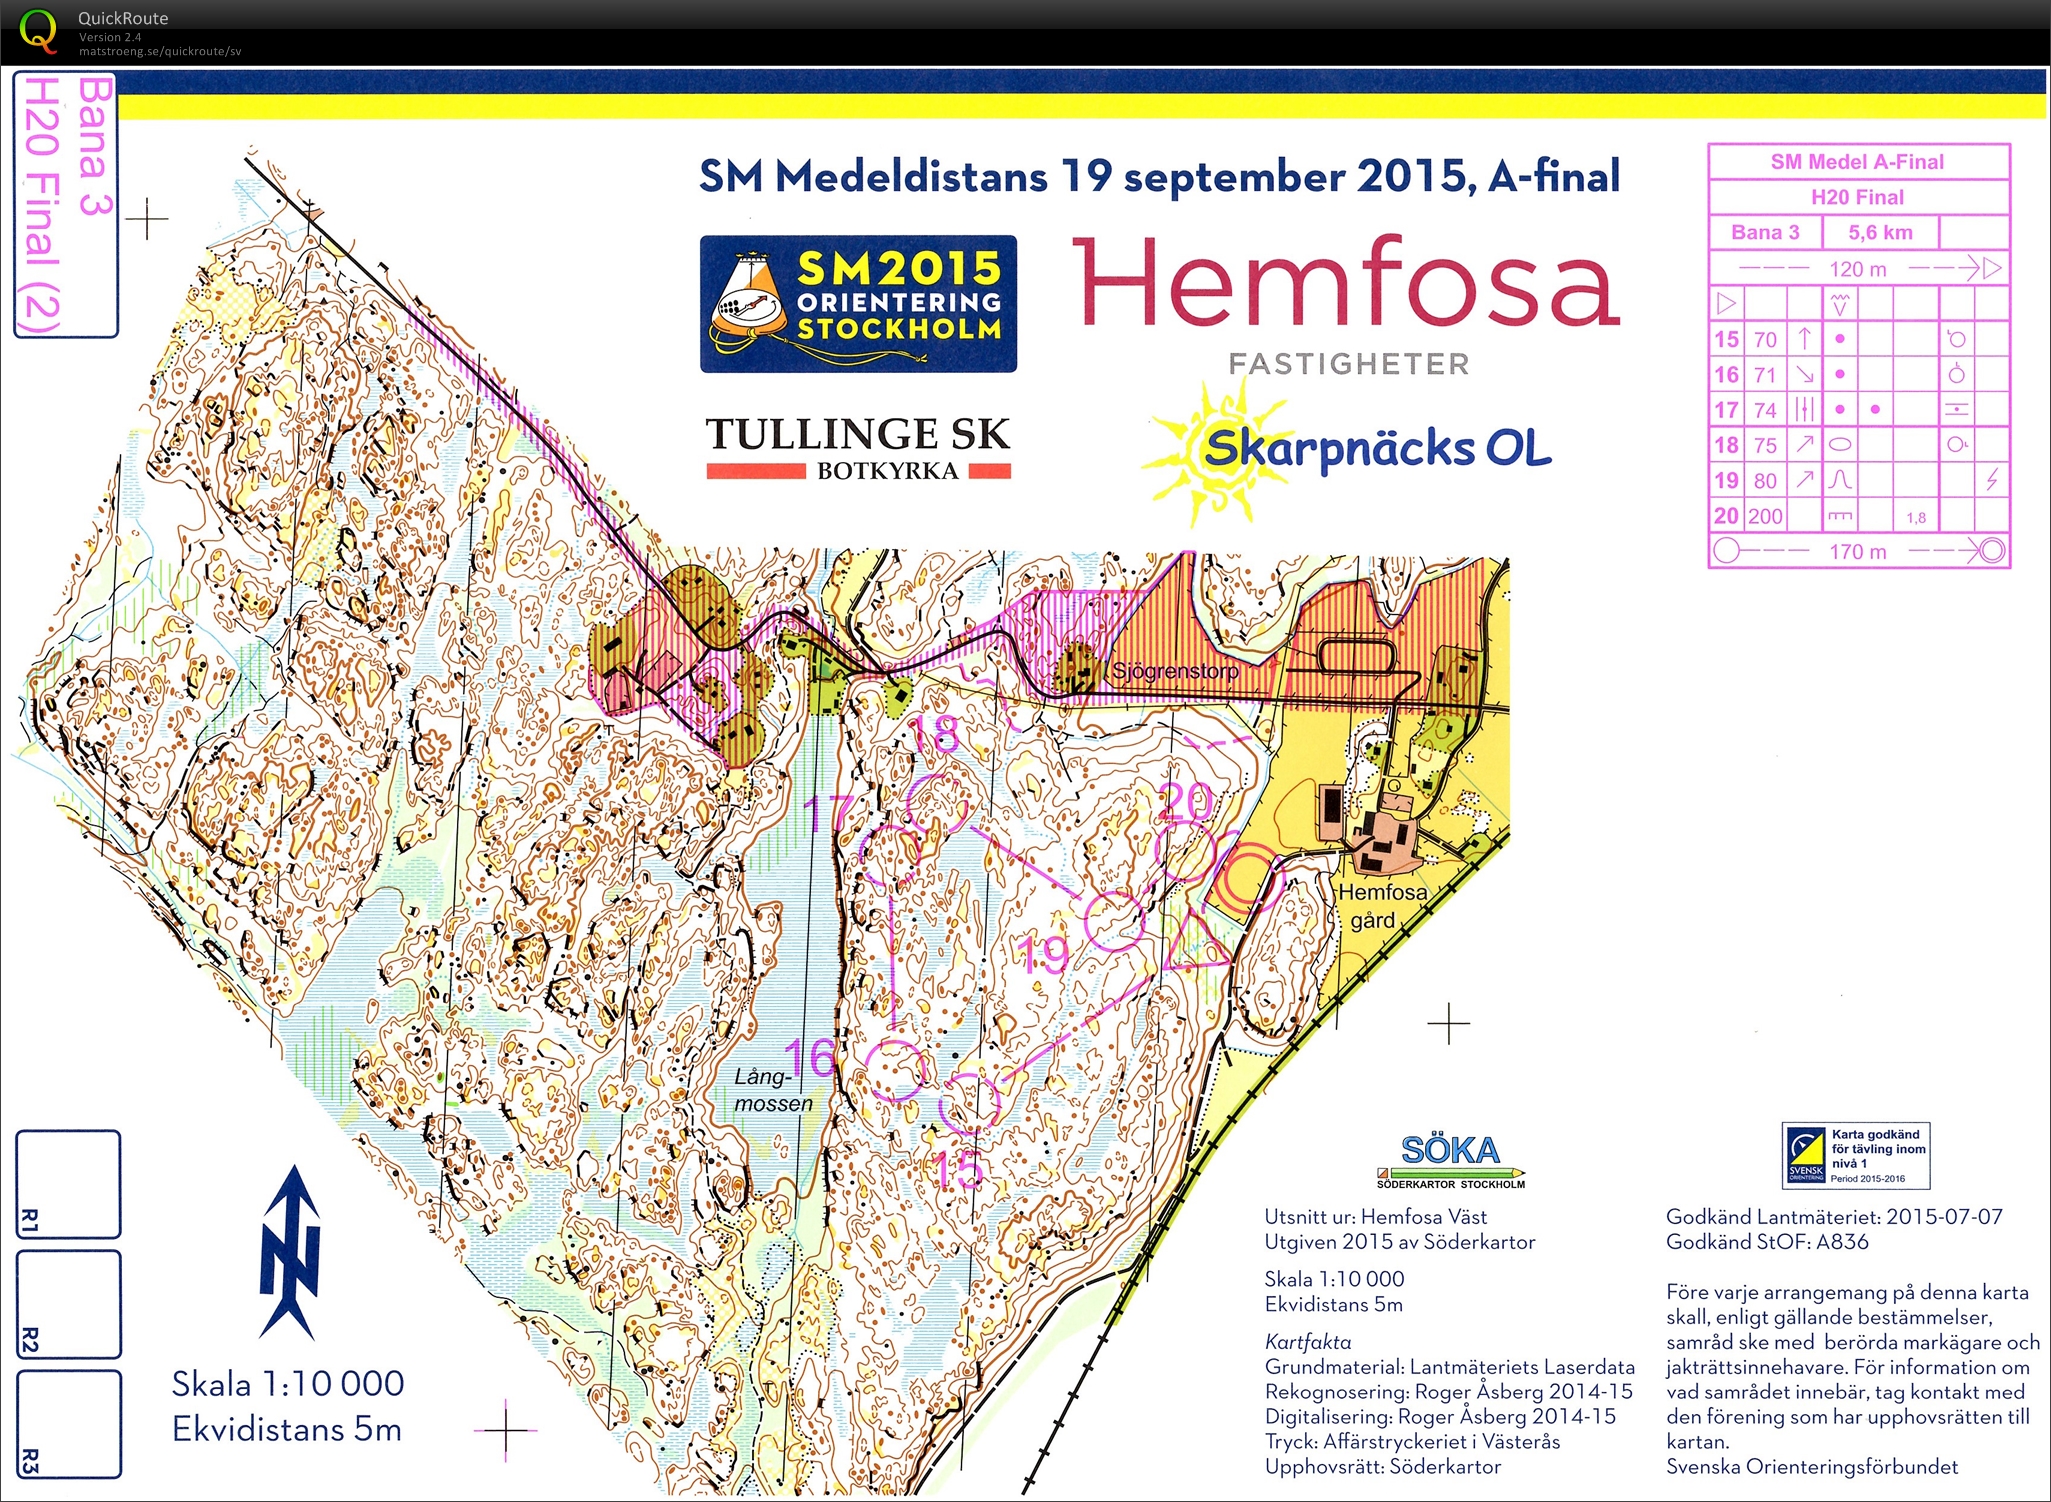 SM Medel, Final, del 2 (19.09.2015)